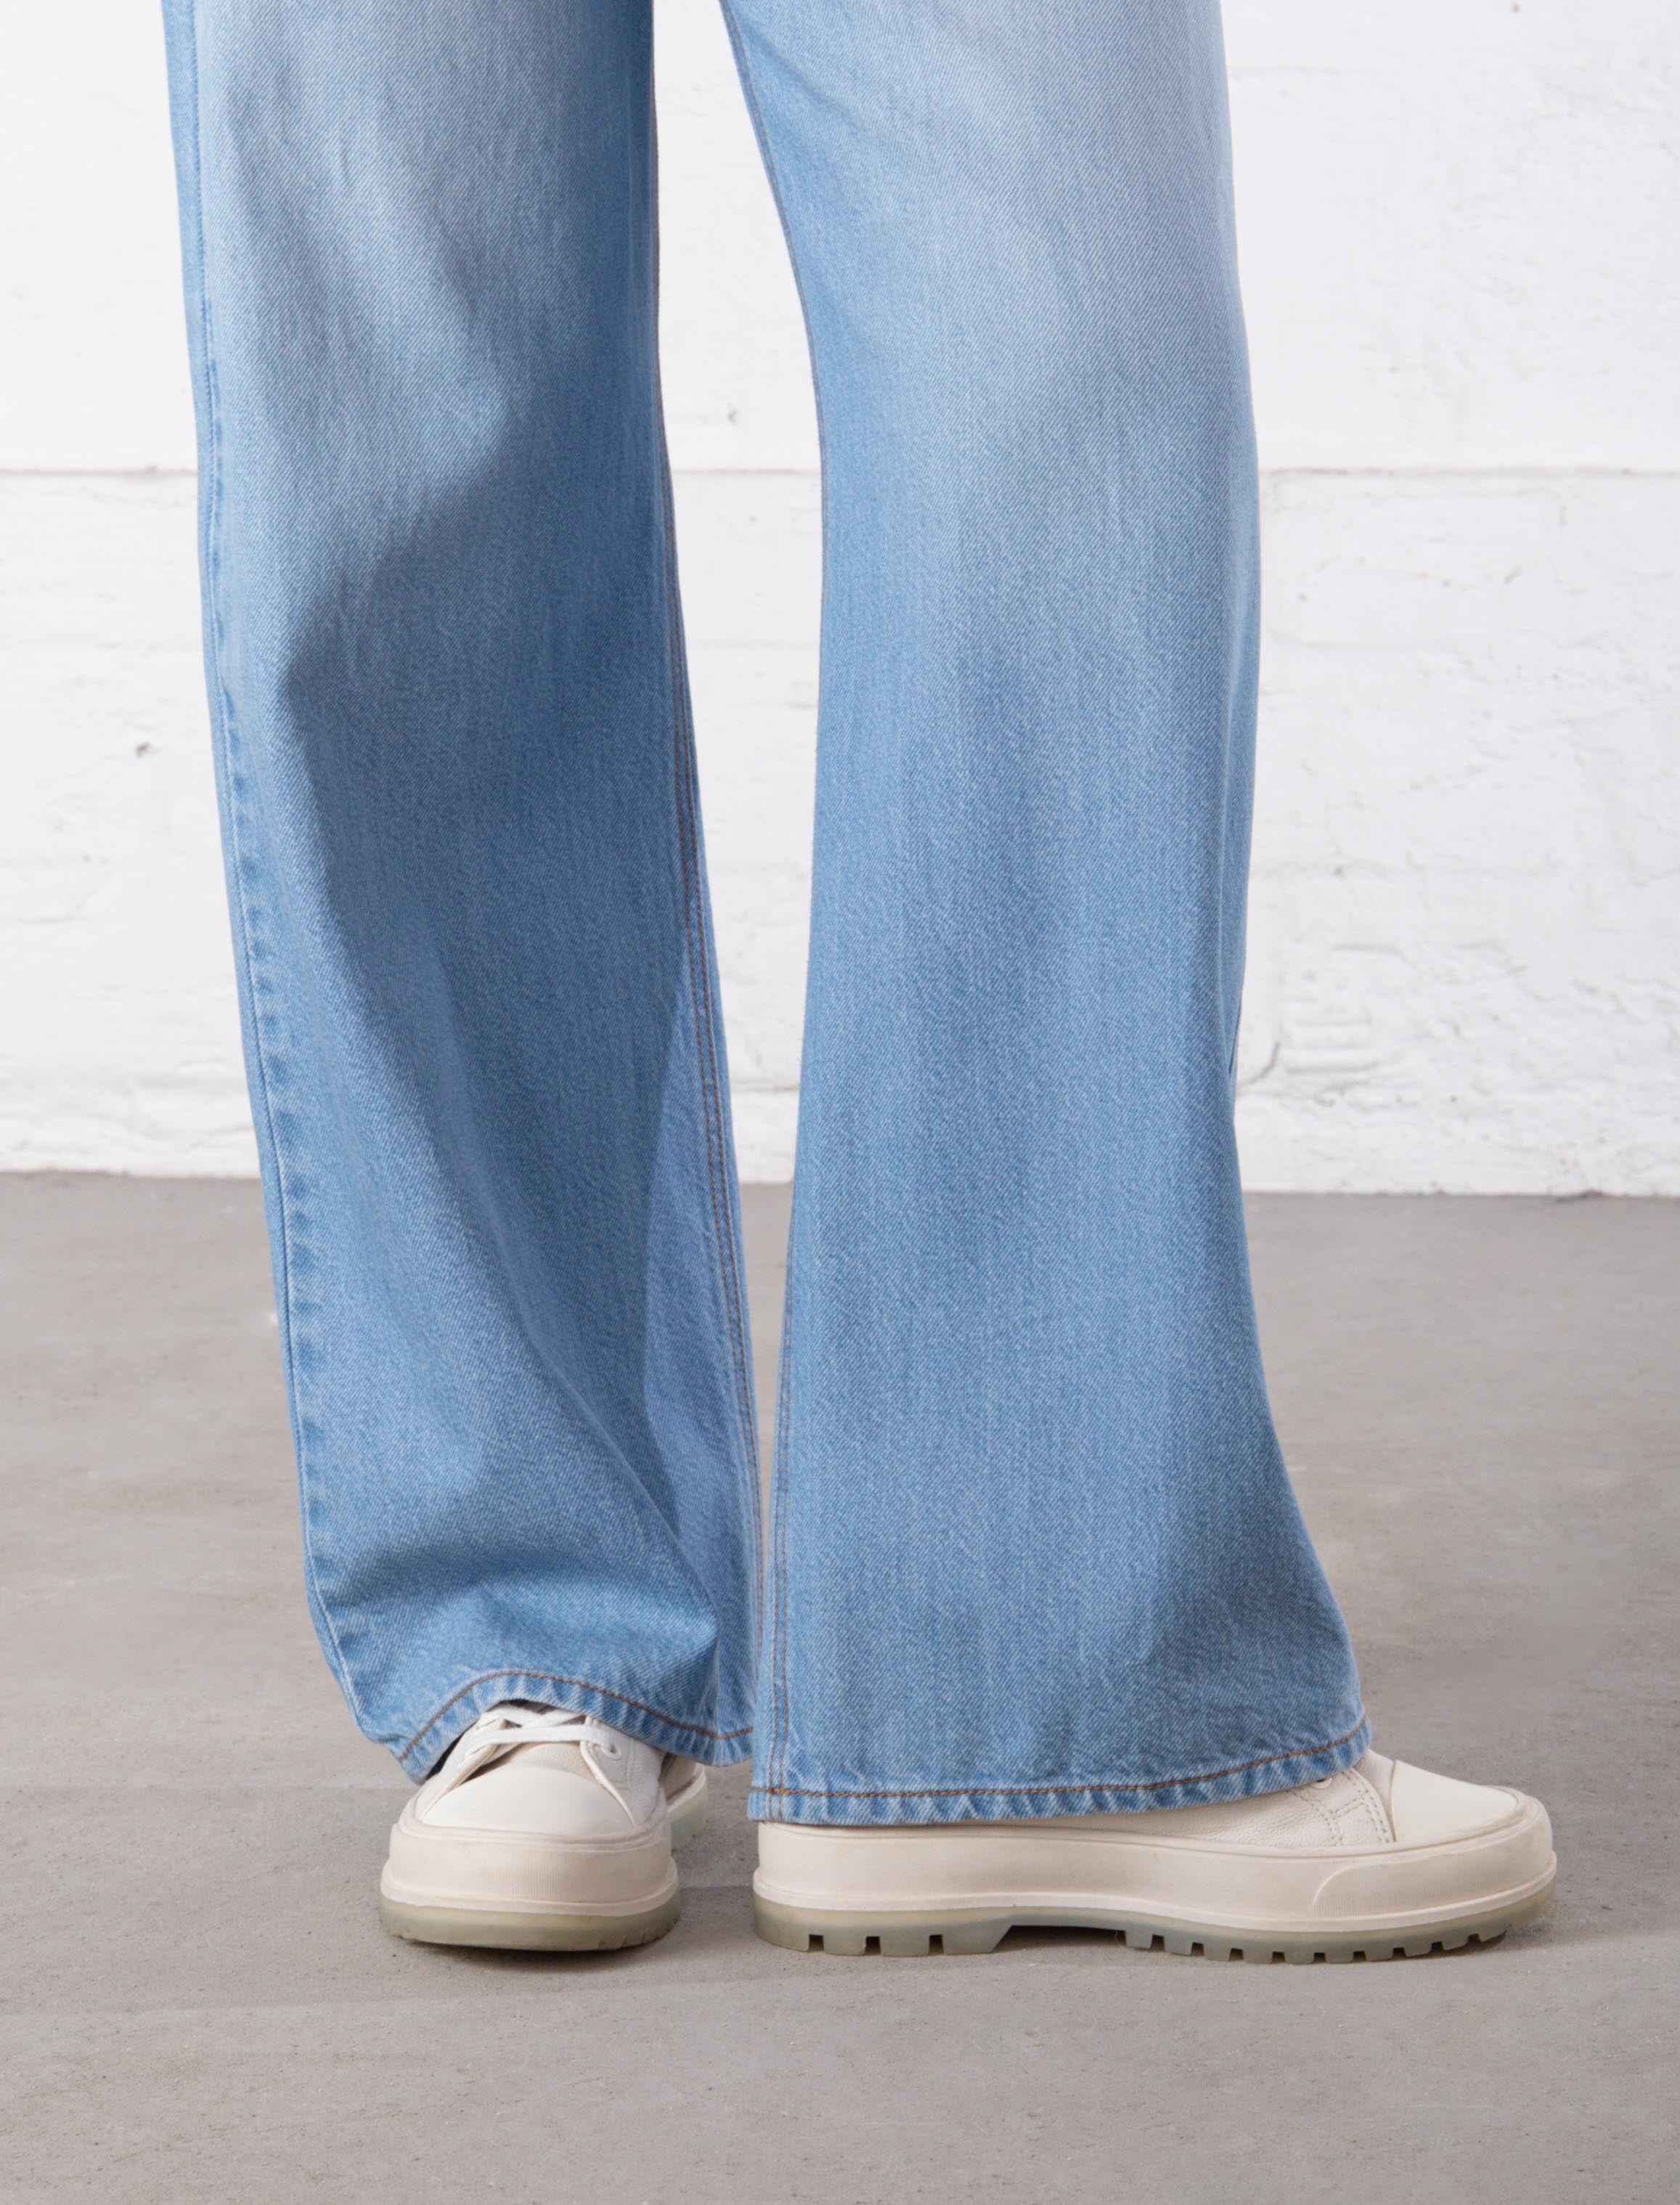 Jeans wideleg tiro alto, Ofertas em jeans de mulher